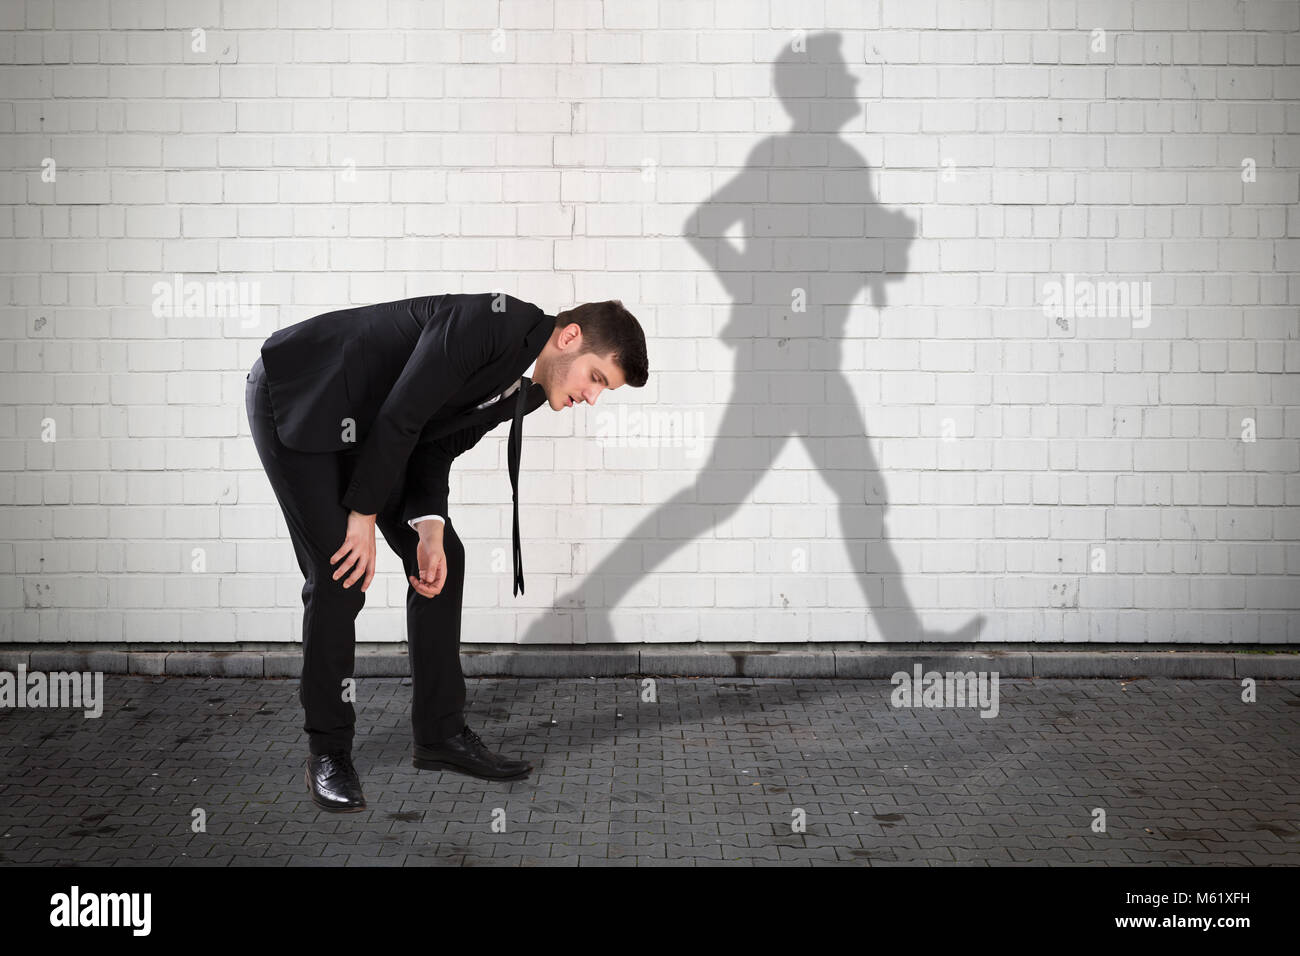 Jeune homme fatigué avec ombre d'homme court formé sur le mur Photo Stock -  Alamy